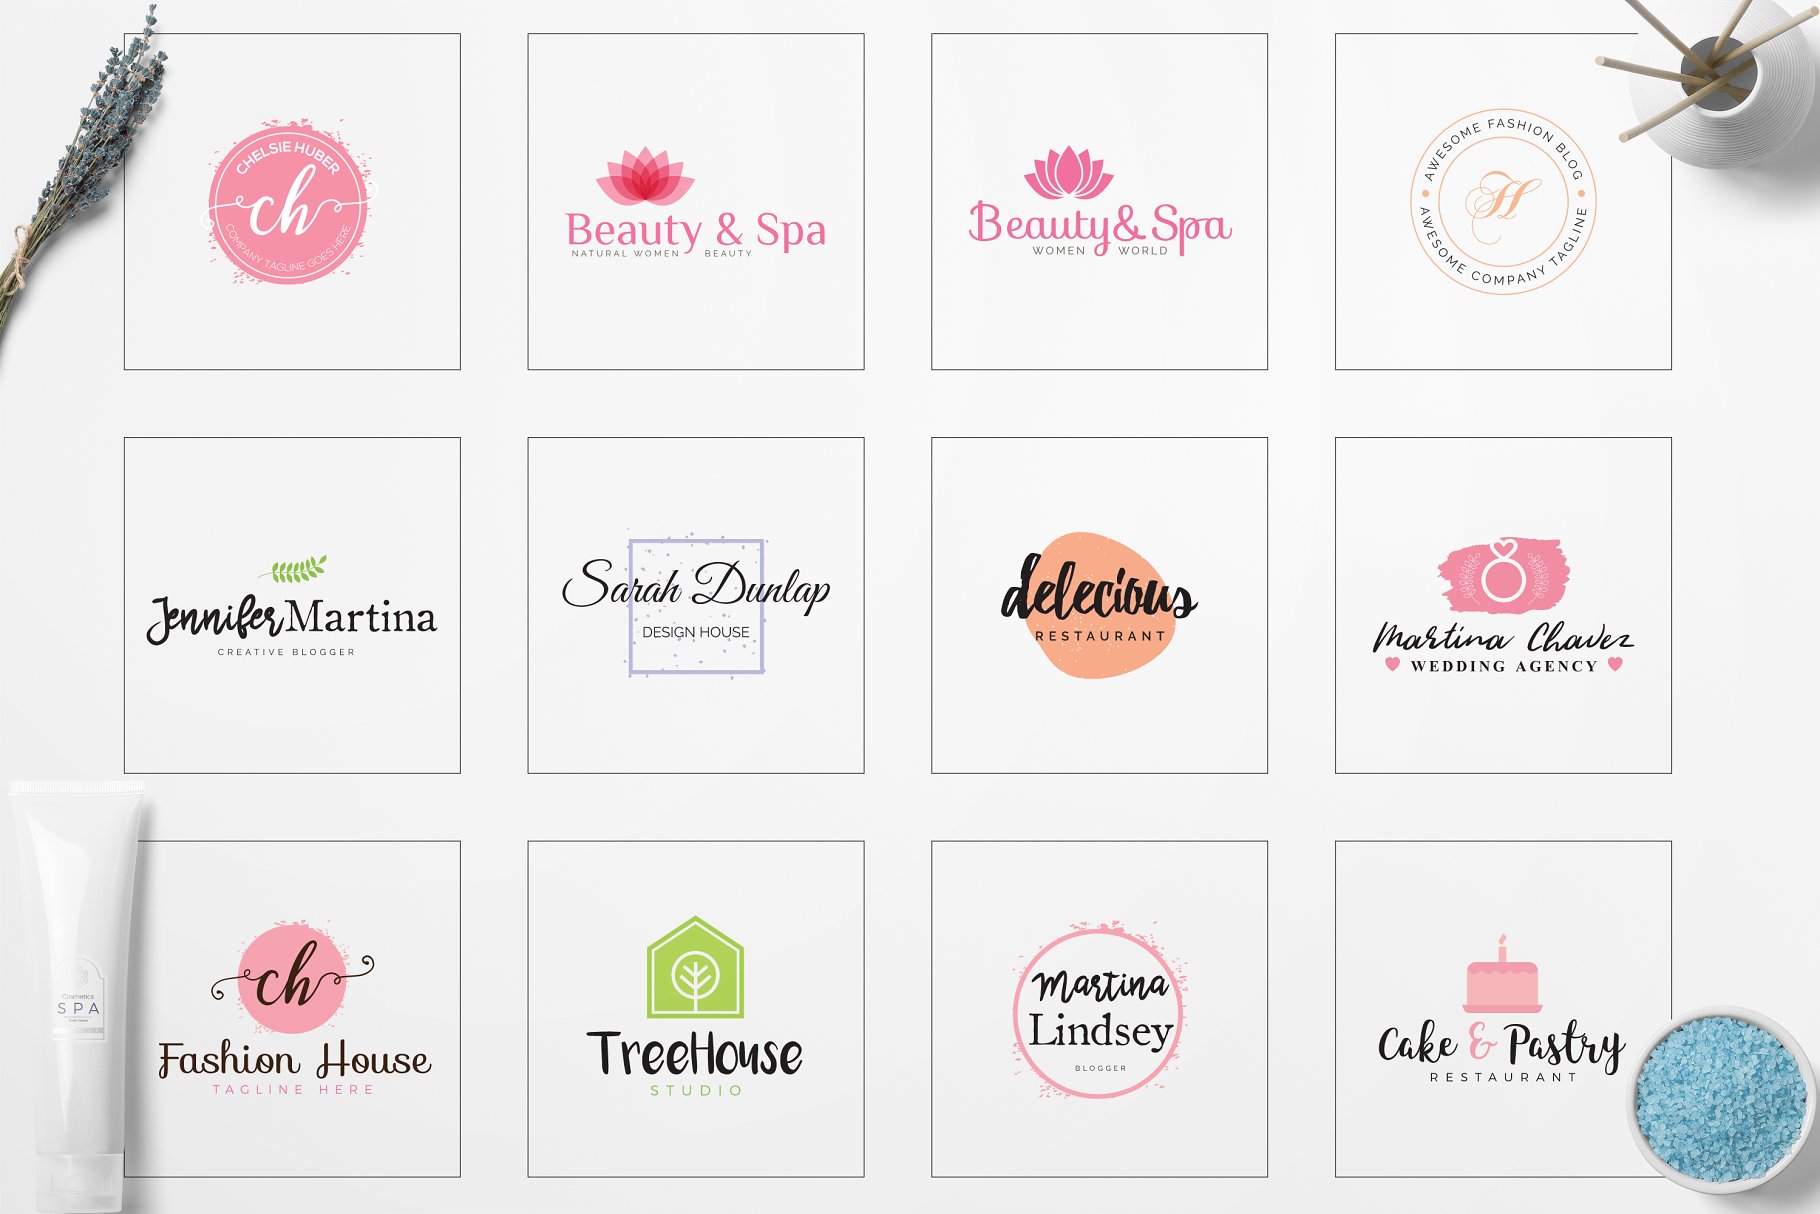 女性简约品牌Logo标志设计素材包 Feminine Minimal Branding Logo Pack插图(3)